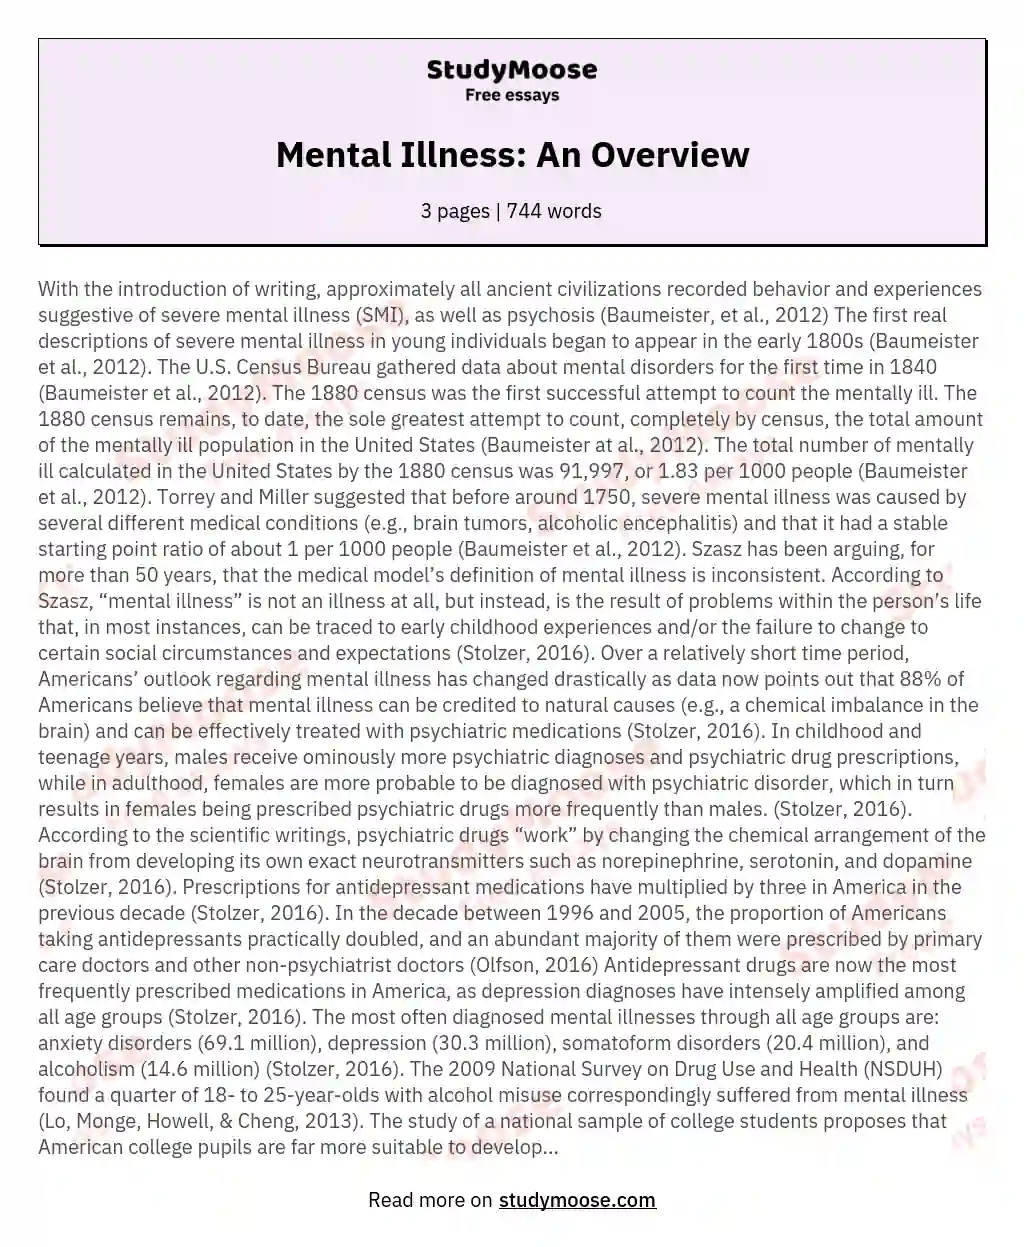 Mental Illness: An Overview essay